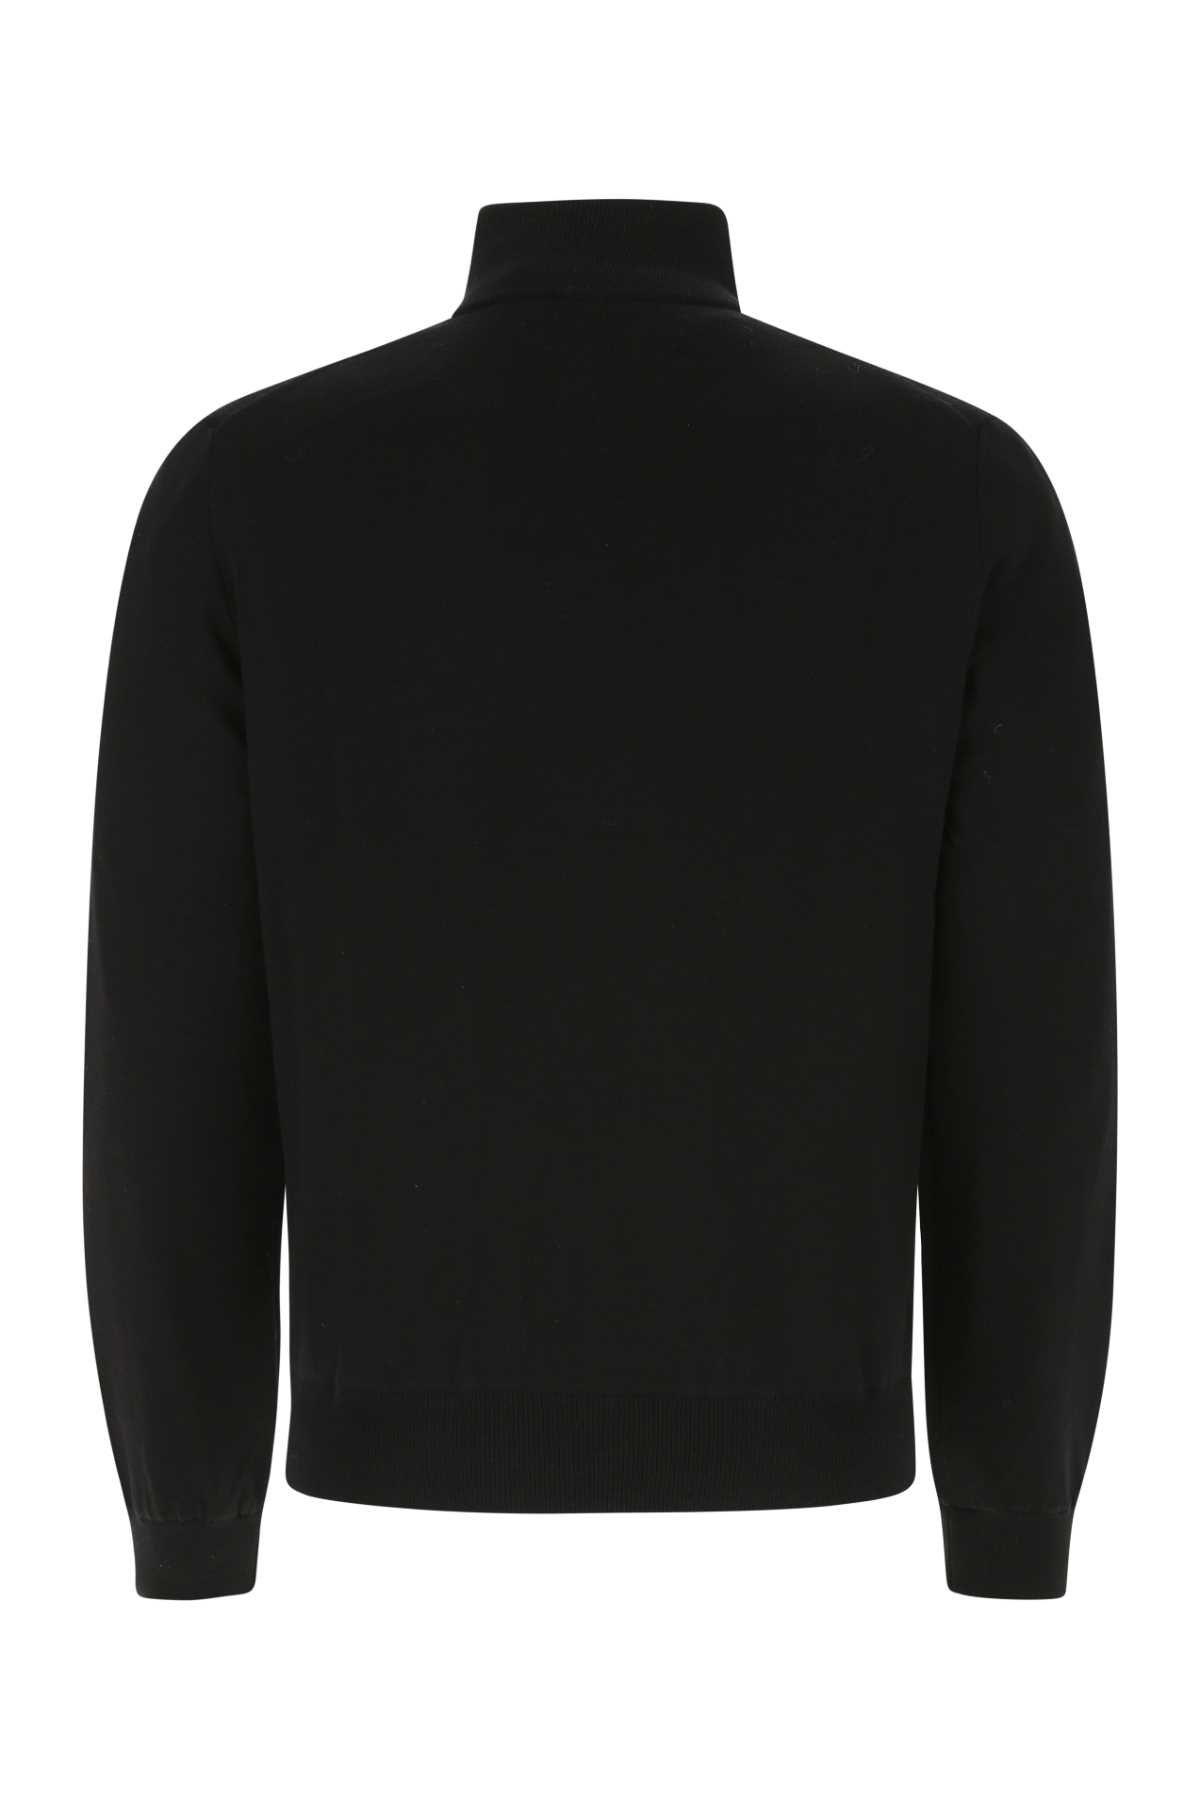 Prada Black Wool Reversible Cardigan In F0002